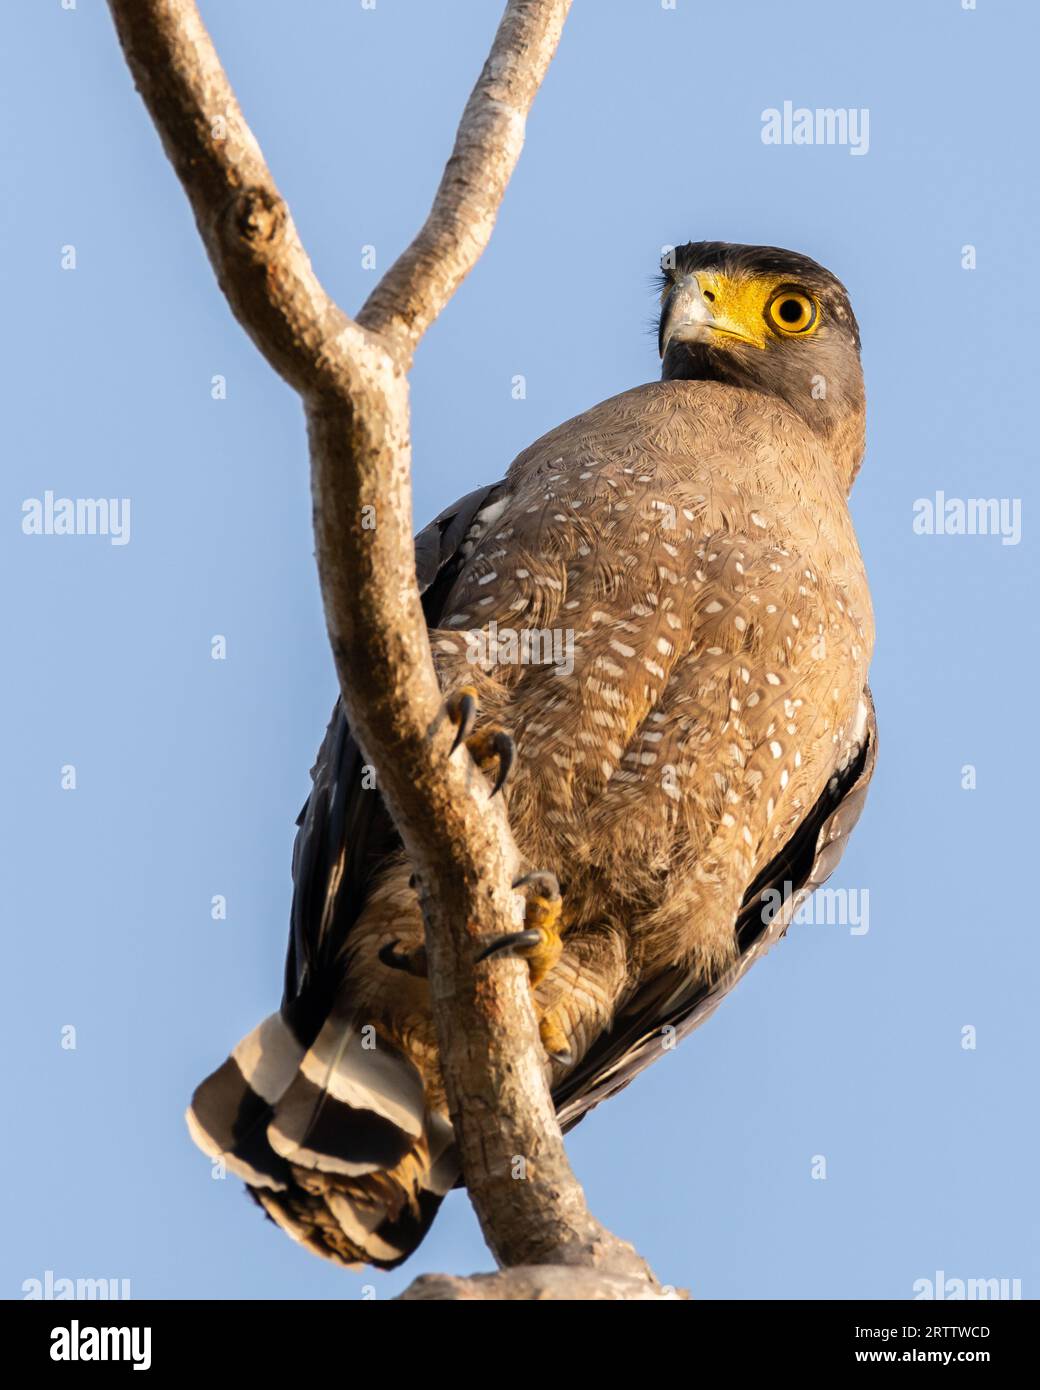 Aquila di serpente crestata su un ramo. Foto ravvicinata dell'uccello preda. Avvistato nel parco nazionale di Yala, Sri Lanka. Foto Stock